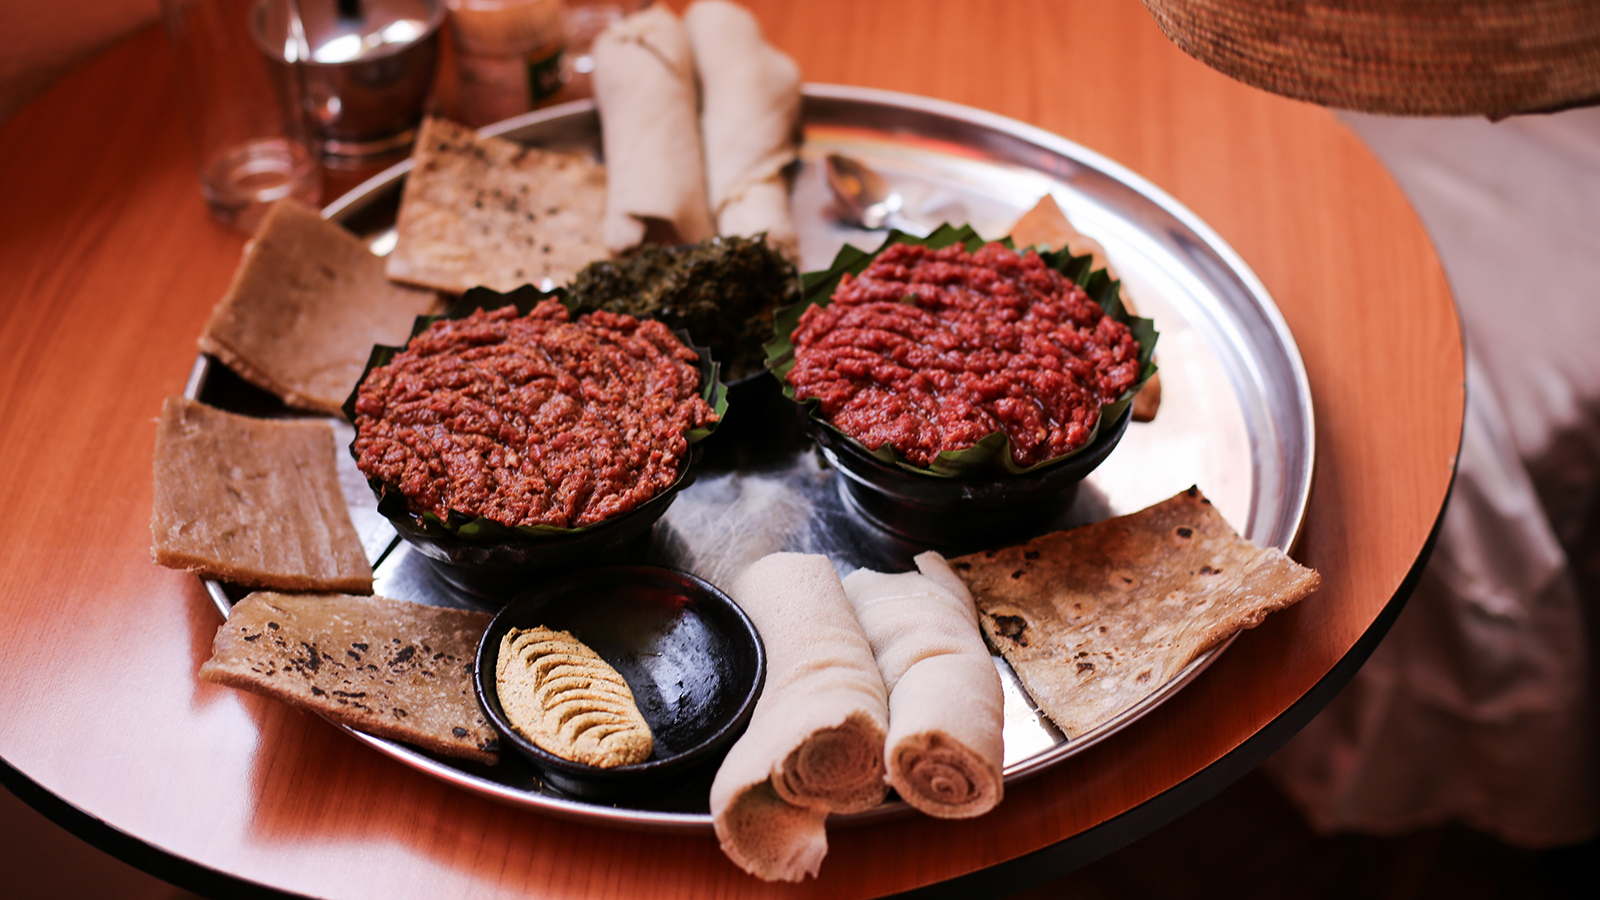 Best Ethiopian Food , HD Wallpaper & Backgrounds